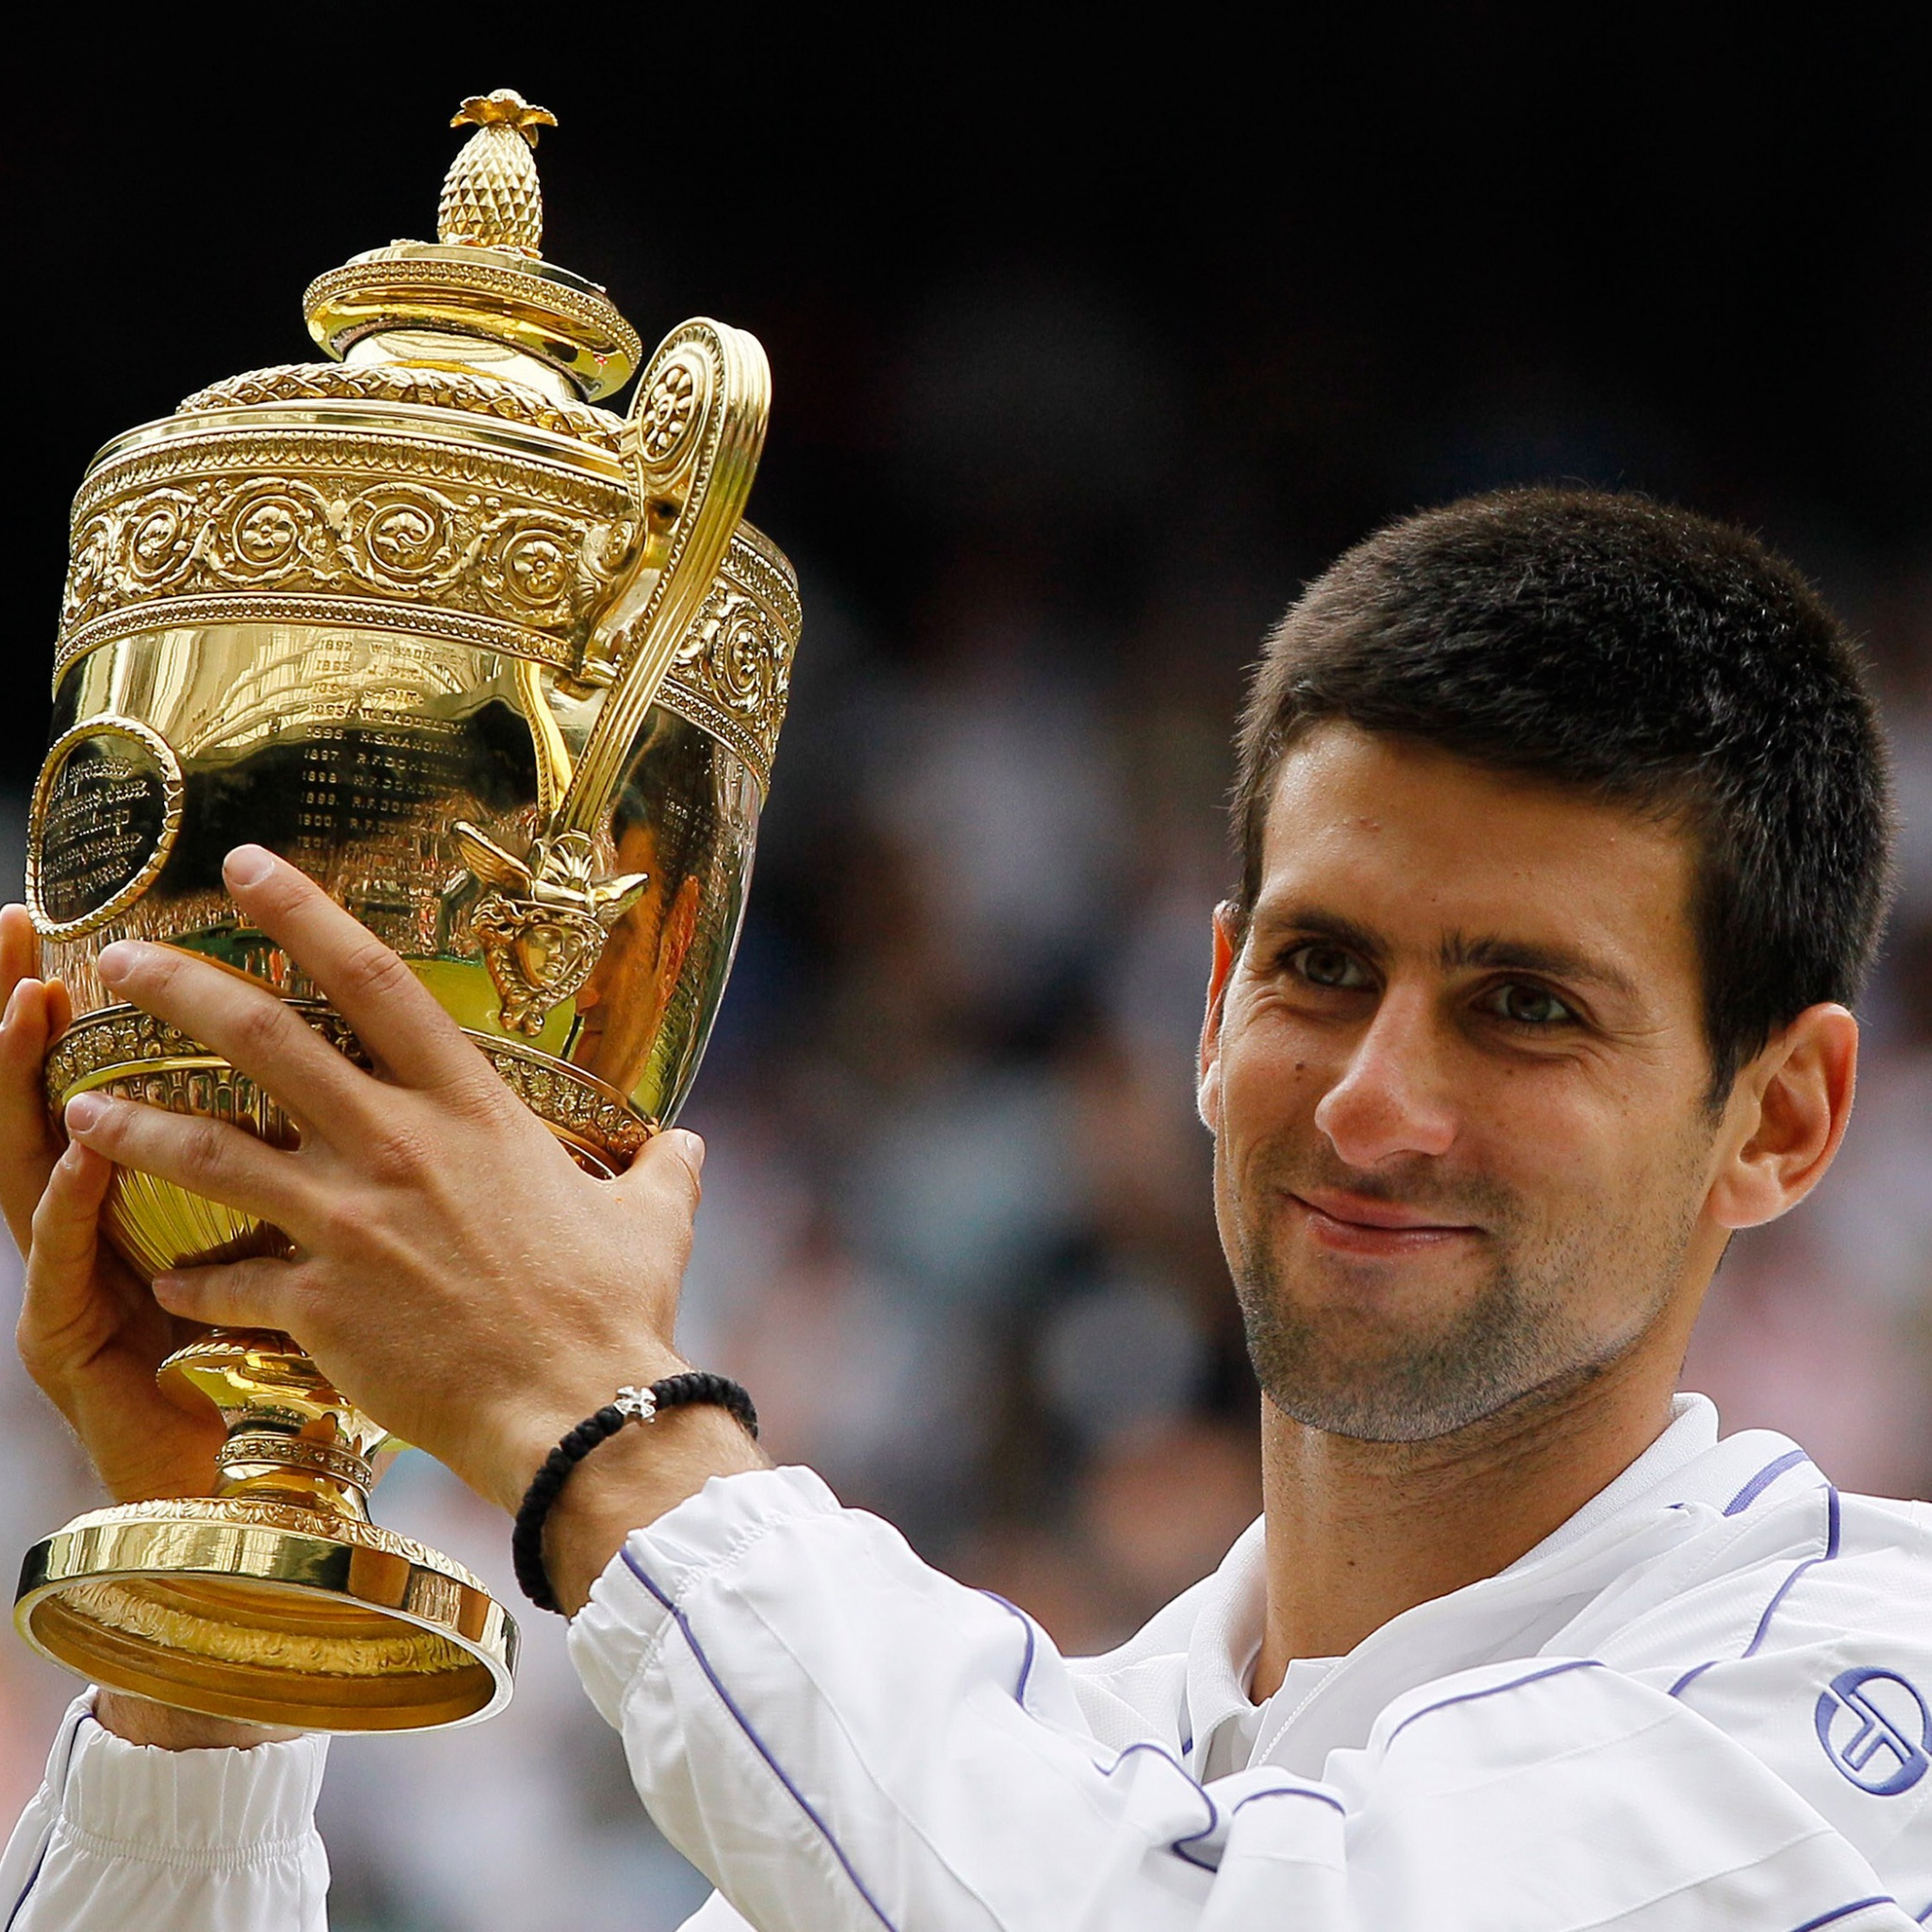 Djokovic - Championships Wimbledon